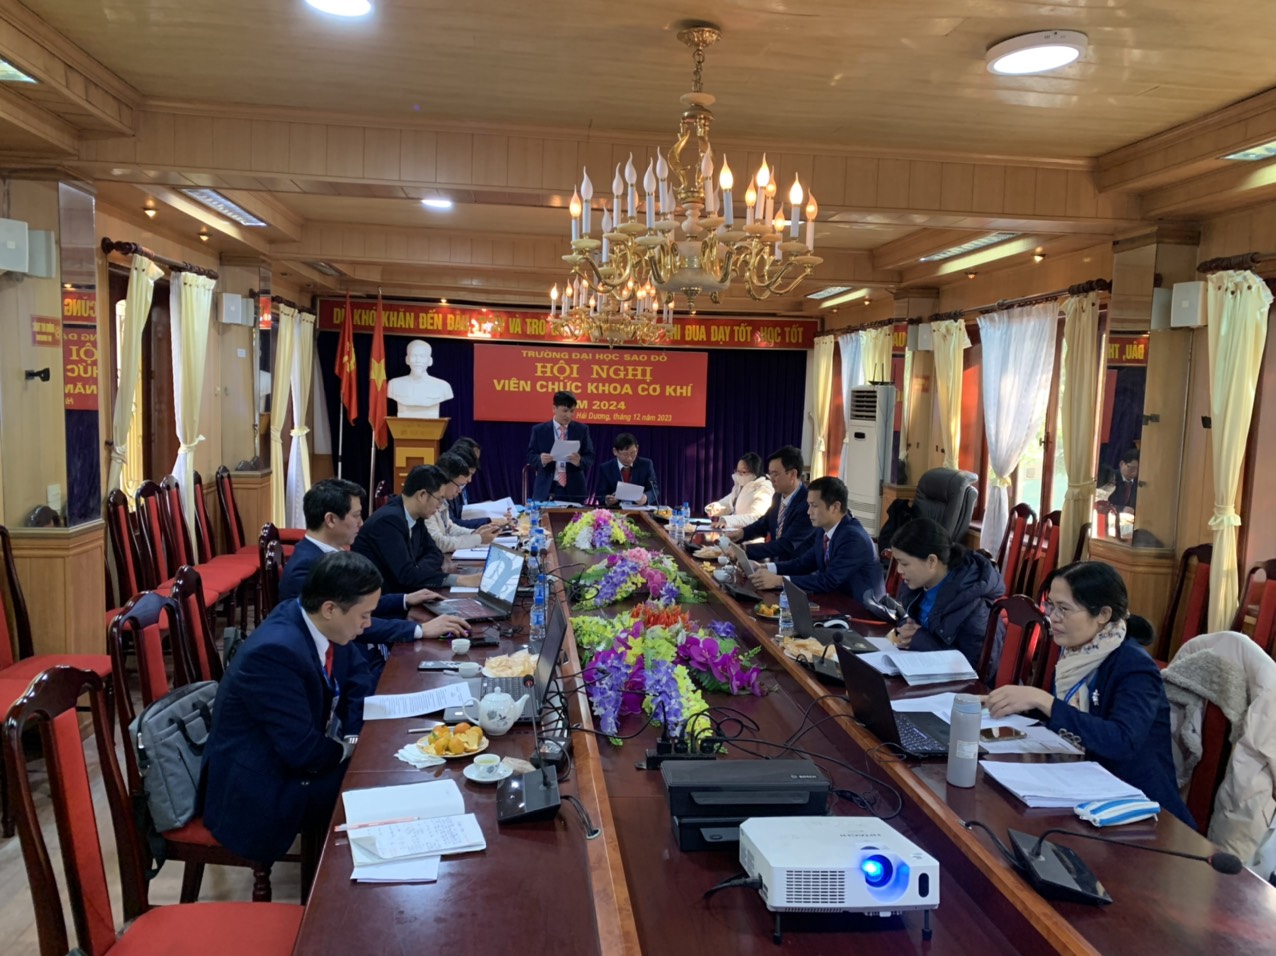 Đồng chí Nguyễn Văn Hinh - Trưởng khoa Cơ khí báo cáo tổng kết công tác năm 2023 và phương hướng nhiệm vụ năm 2024